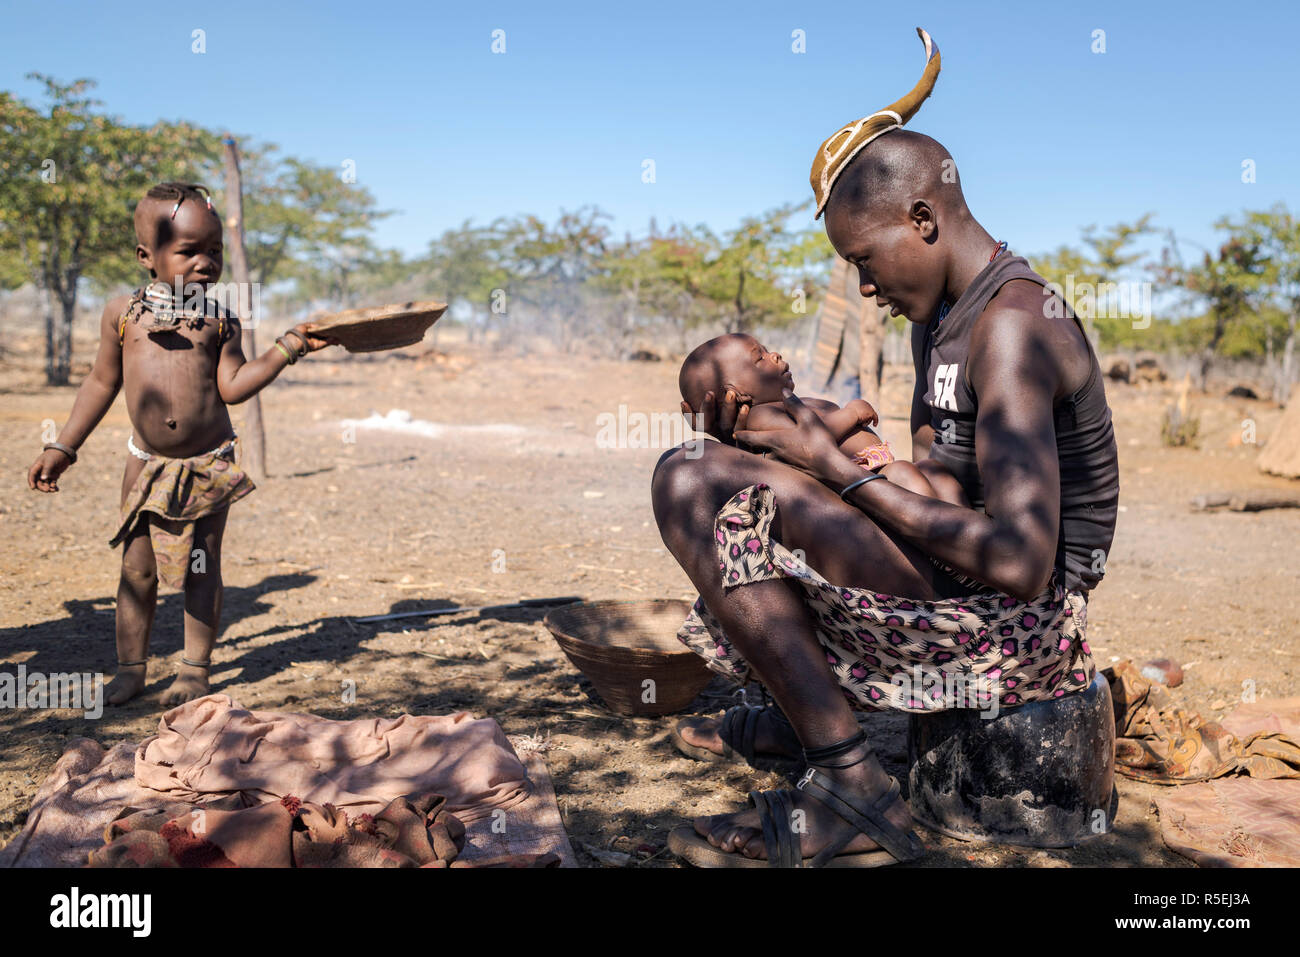 Junge Himba Junge Mit Einem Traditionellen Junge Himba Frisur Halt Ein Baby Auf Dem Schoss Wahrend Ein Kind Vorbei Wenn Man Sie Anschaut Stockfotografie Alamy